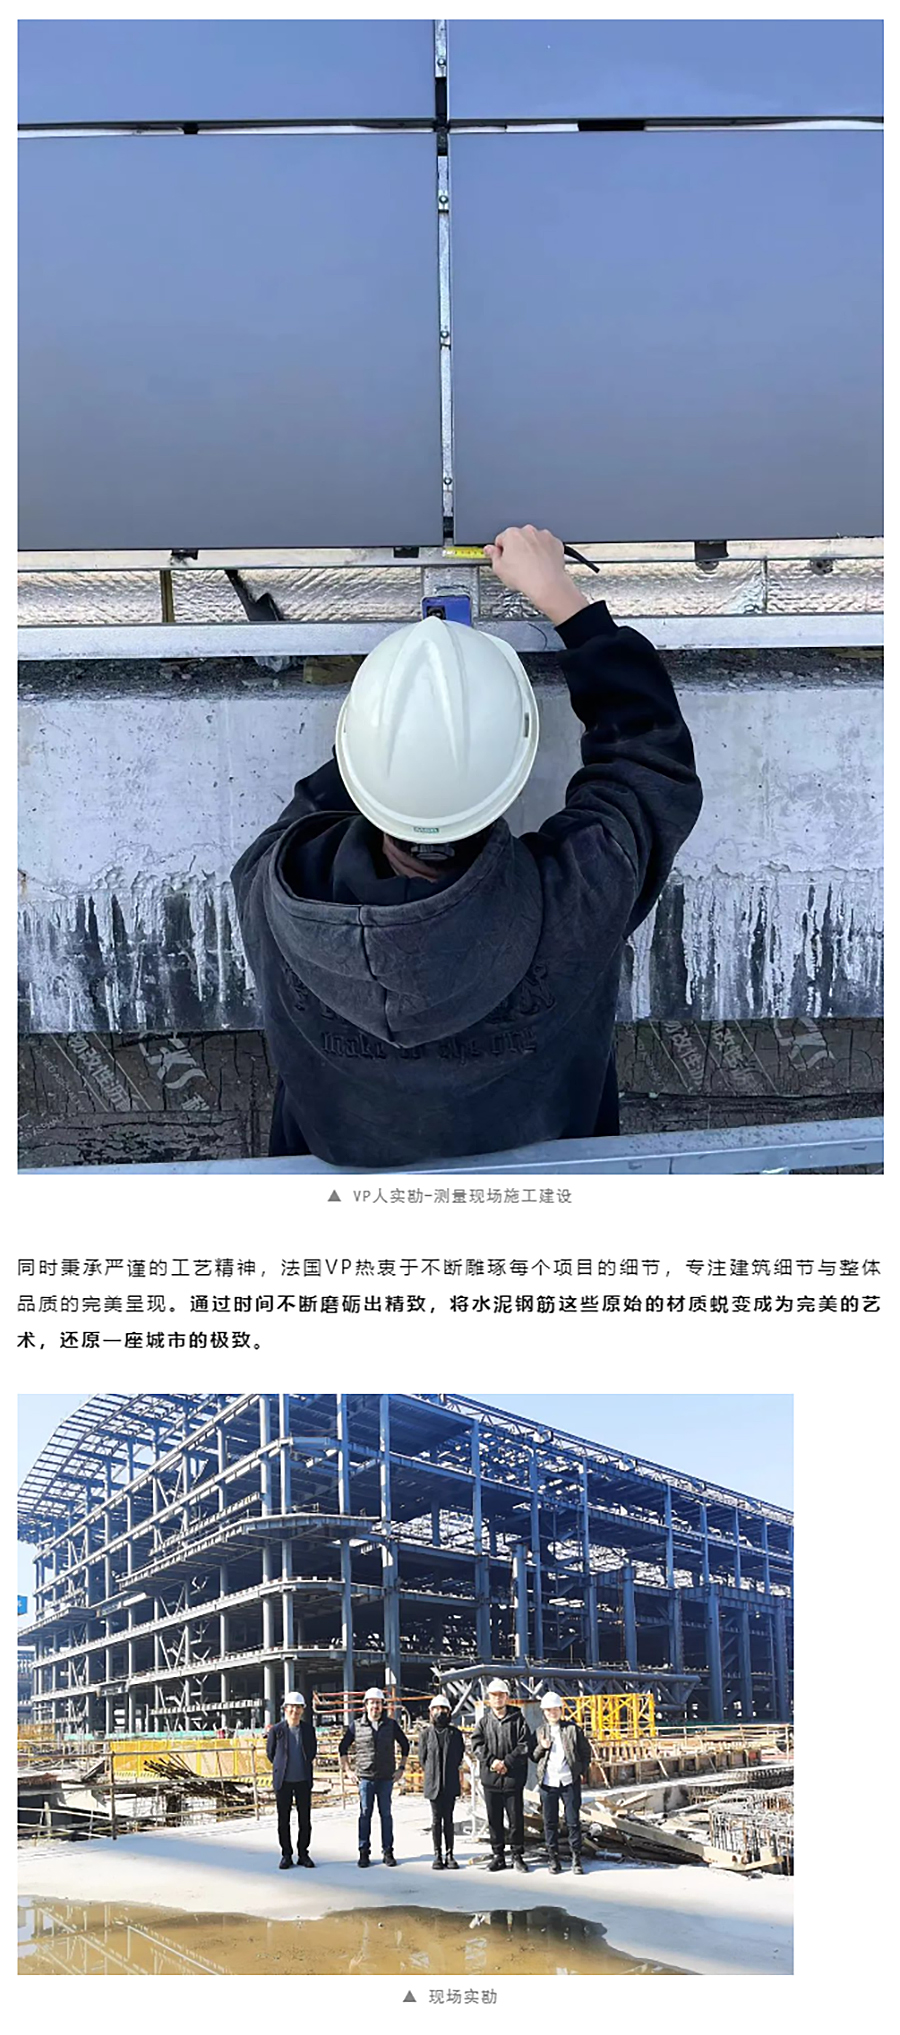 项目近况-_-杭州大会展中心一期展馆钢结构已全面结顶_0002_图层-3 拷贝.jpg